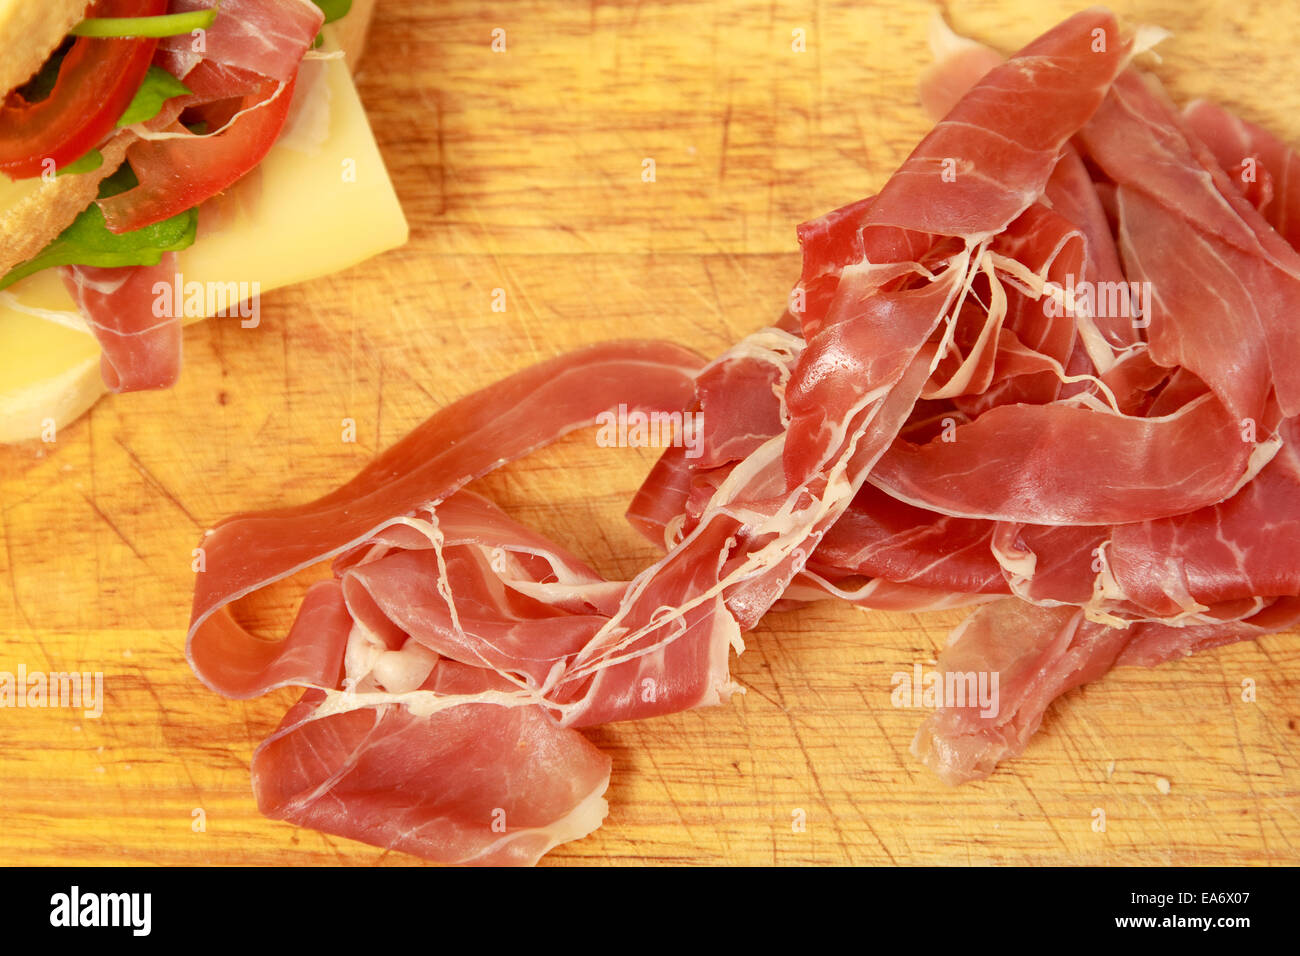 Slices of Italian prosciutto ham Stock Photo